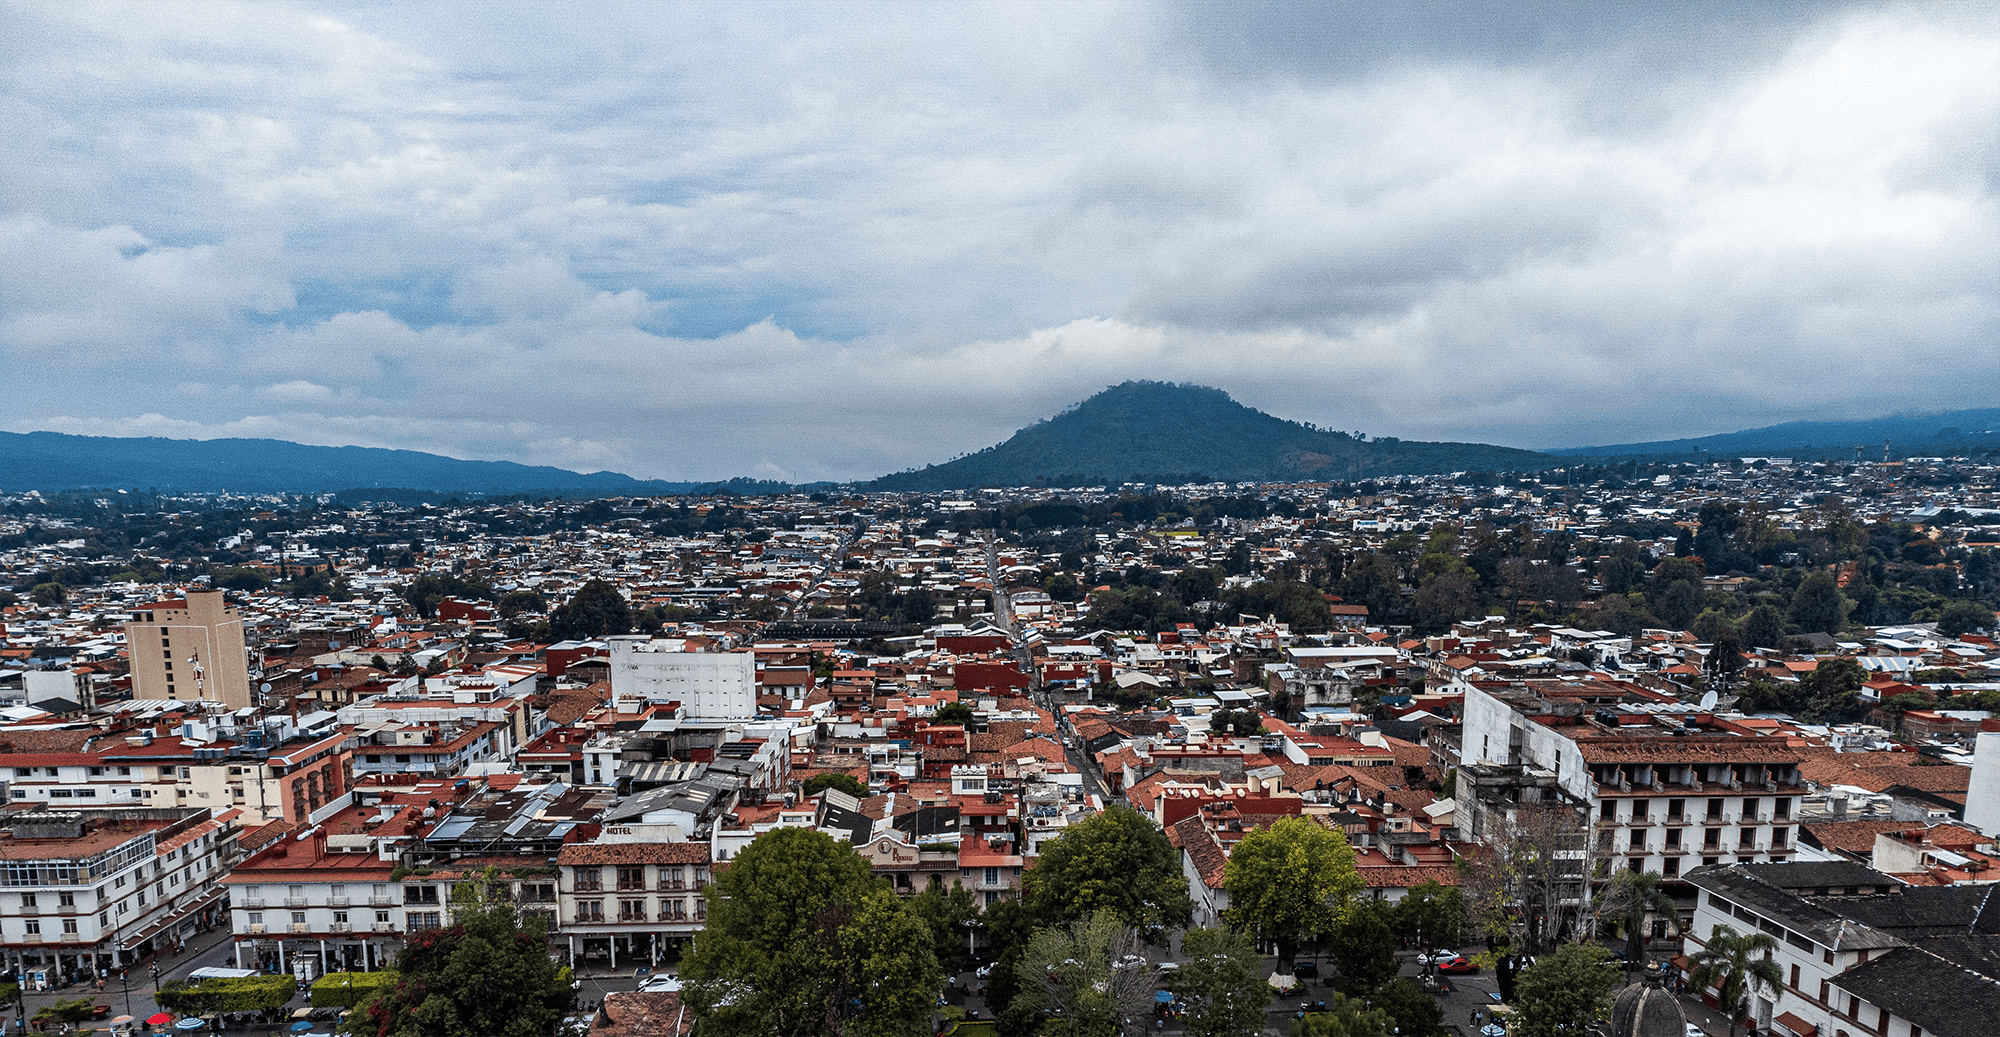 Photo: Mexico Special Election Series #1 Vista panoramica de Uruapan, Michoacan, Mexico. By esdelval Adobe Stock